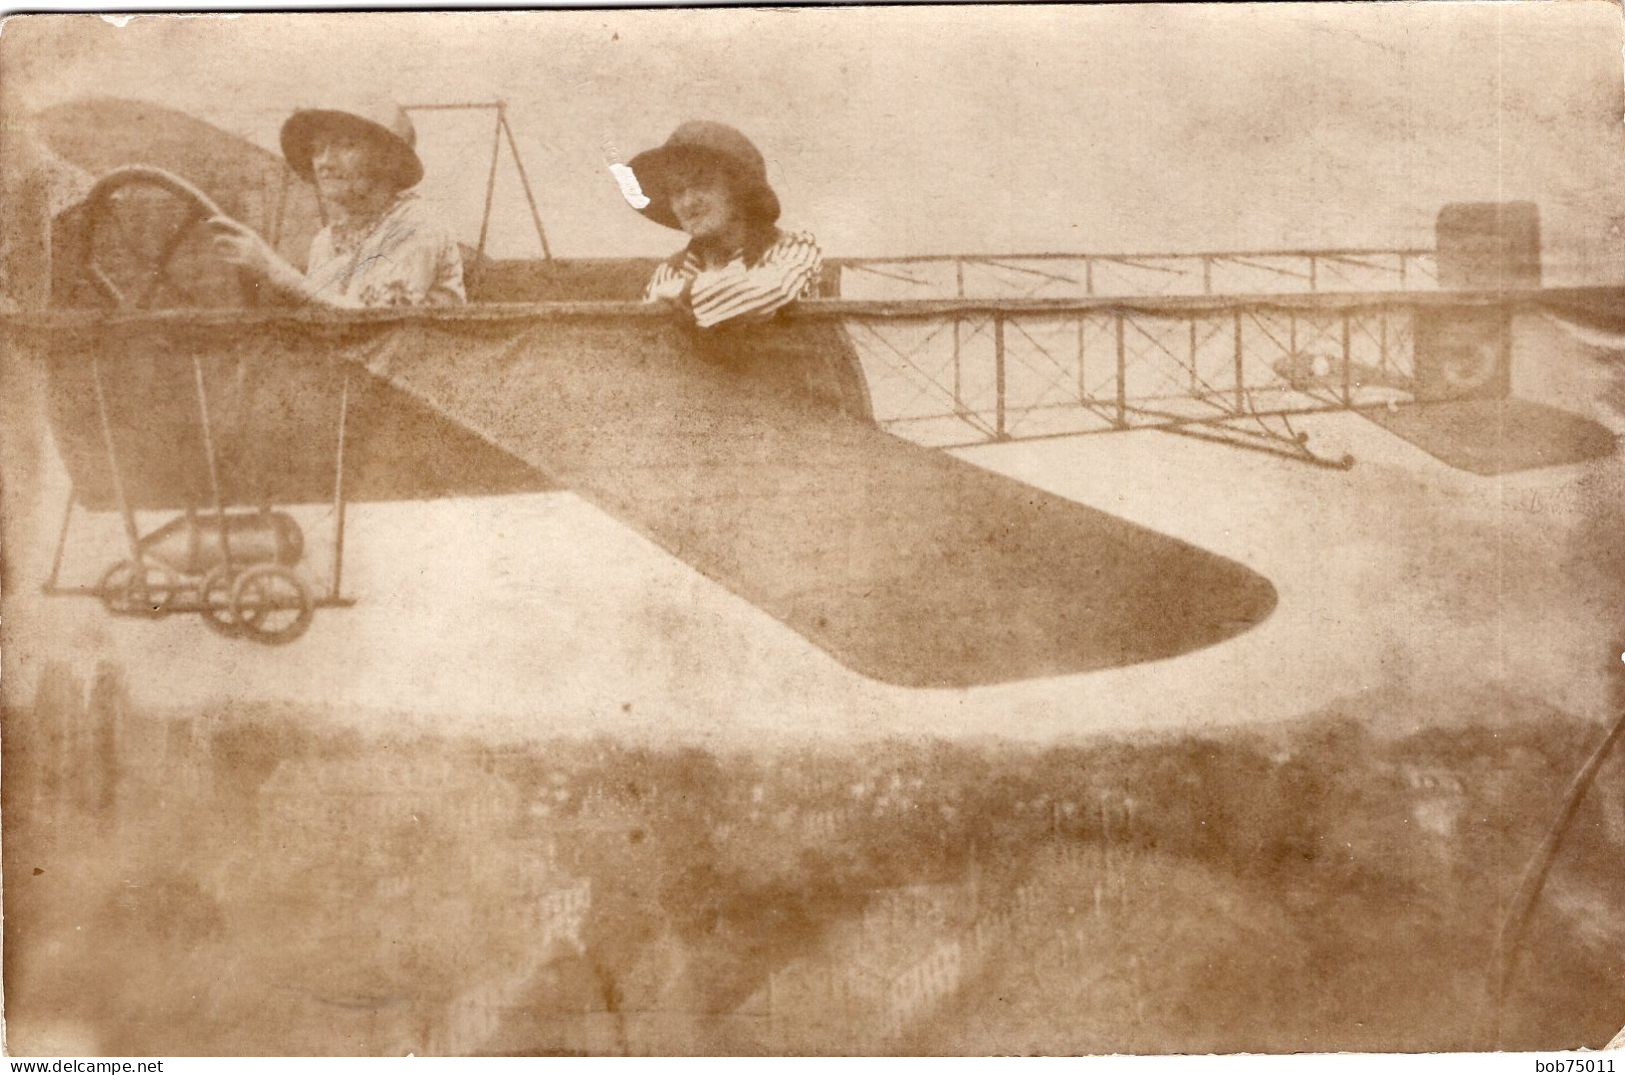 Carte Photo D'une Femme Avec Une Jeune Fille Posant Dans Un Décor D'avion Dans Un Studio Photo Vers 1910 - Anonieme Personen